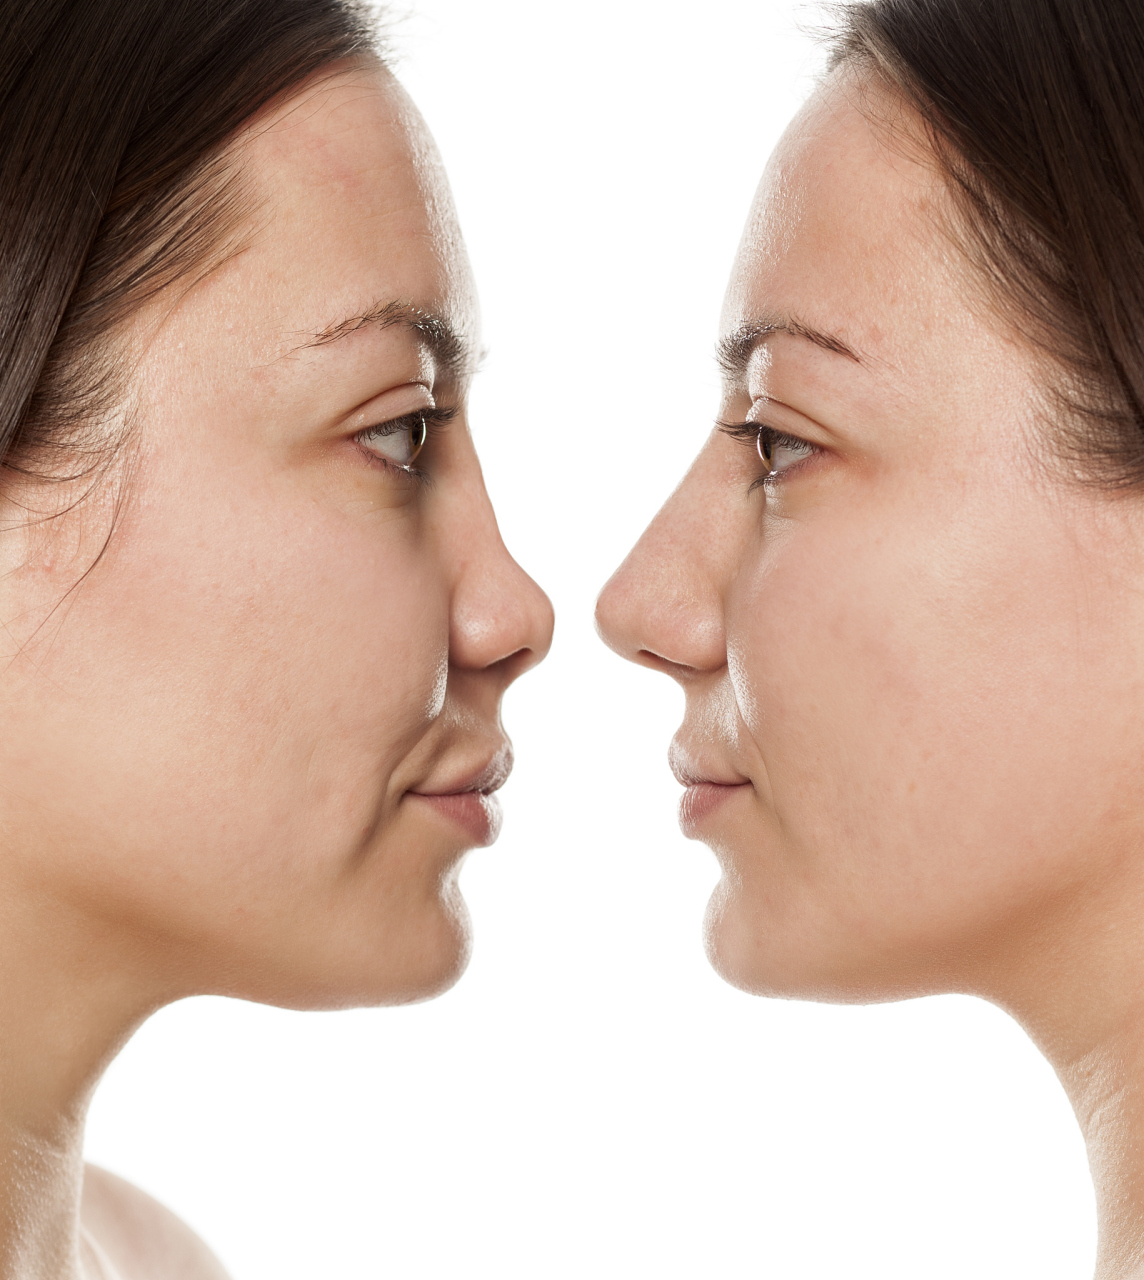 鼻子的发育其实是终身的,大多数人小时候鼻子都是发育的不太完整的